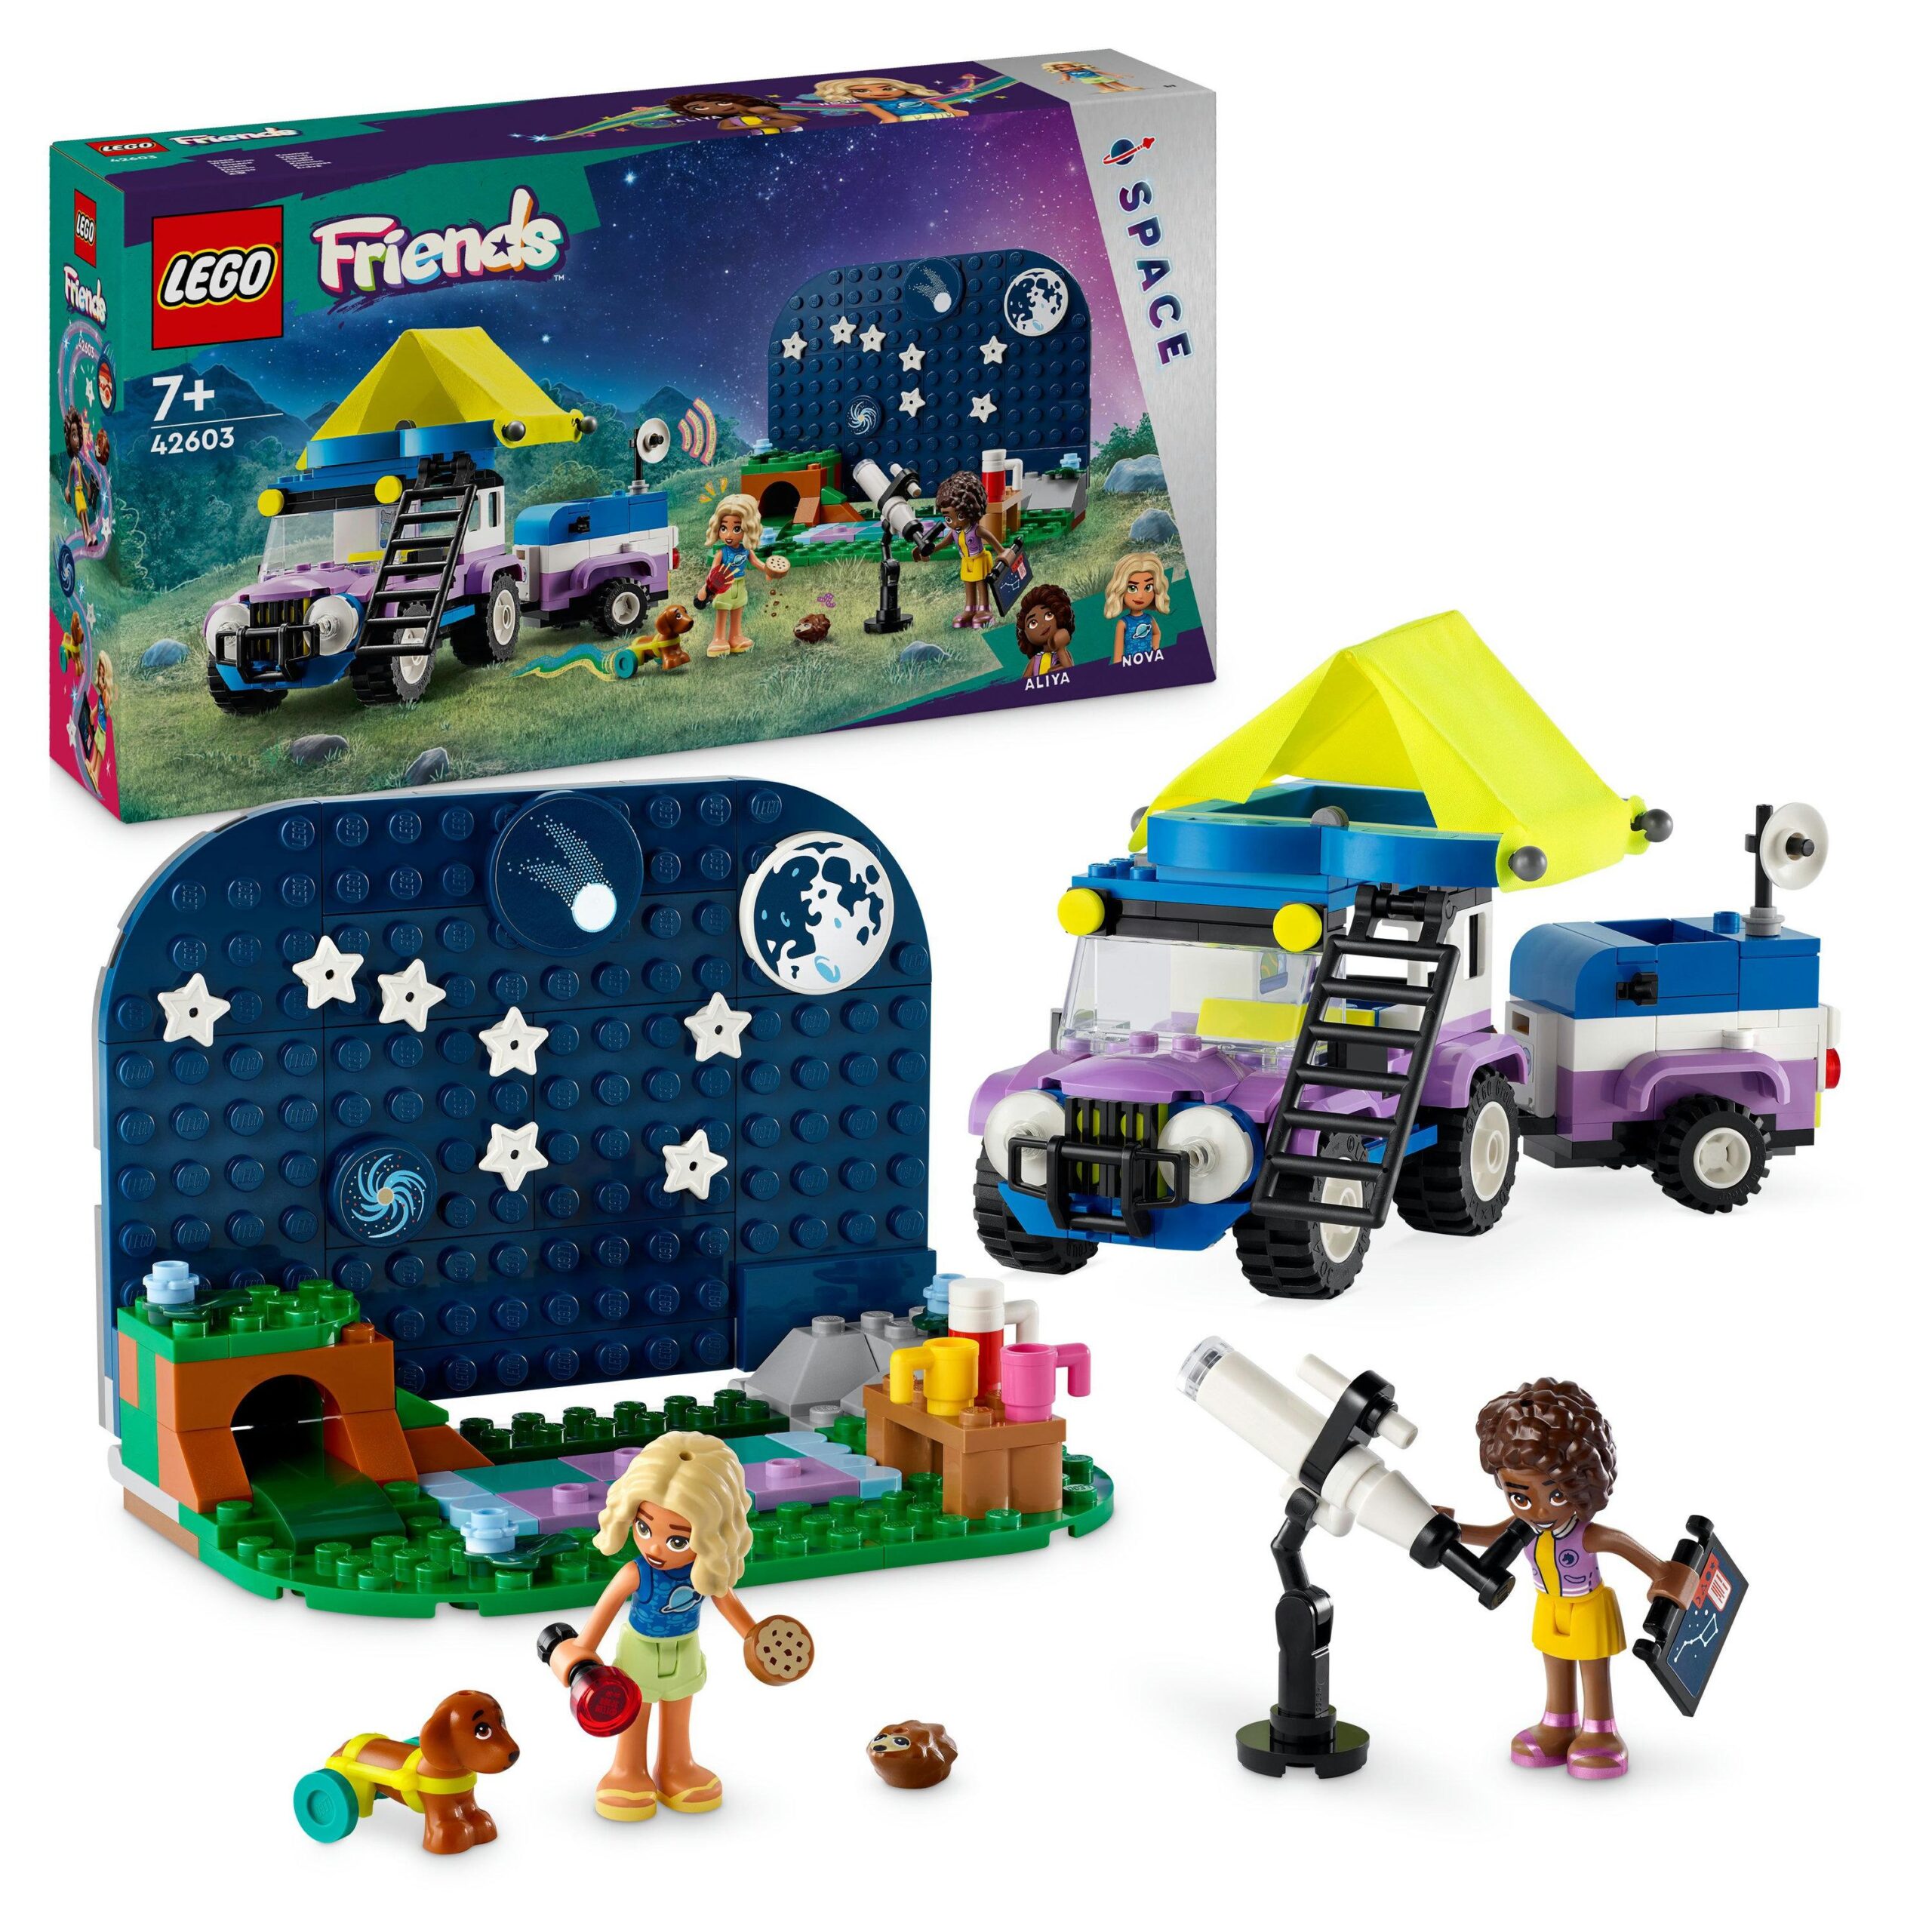 Lego friends 42603 camping-van sotto le stelle, giochi per bambini 7+ con telescopio giocattolo, auto, mini bamboline e cane - LEGO FRIENDS